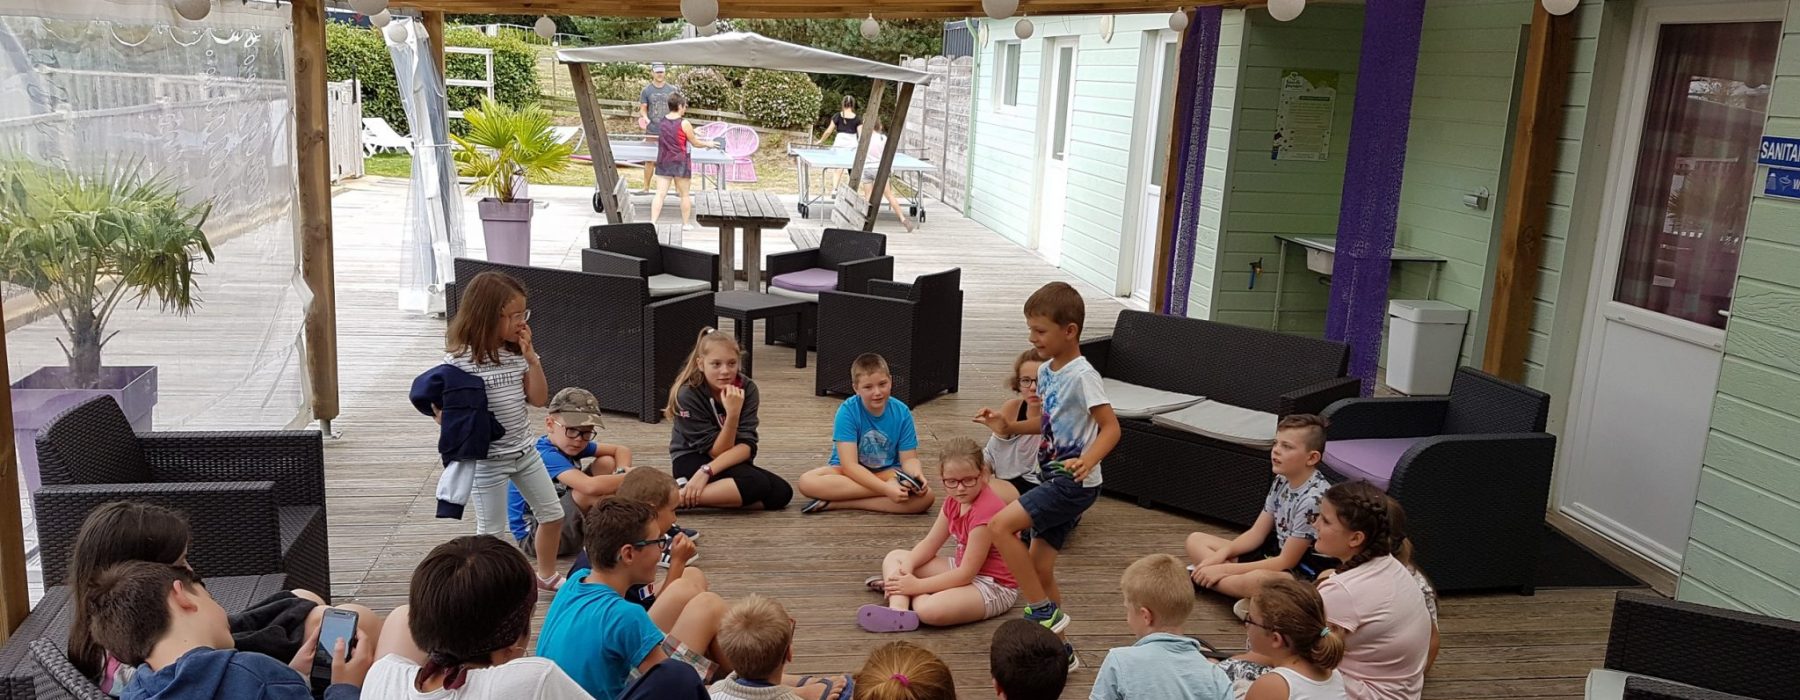 Camping avec animations & club enfants près de Lorient dans le Morbihan